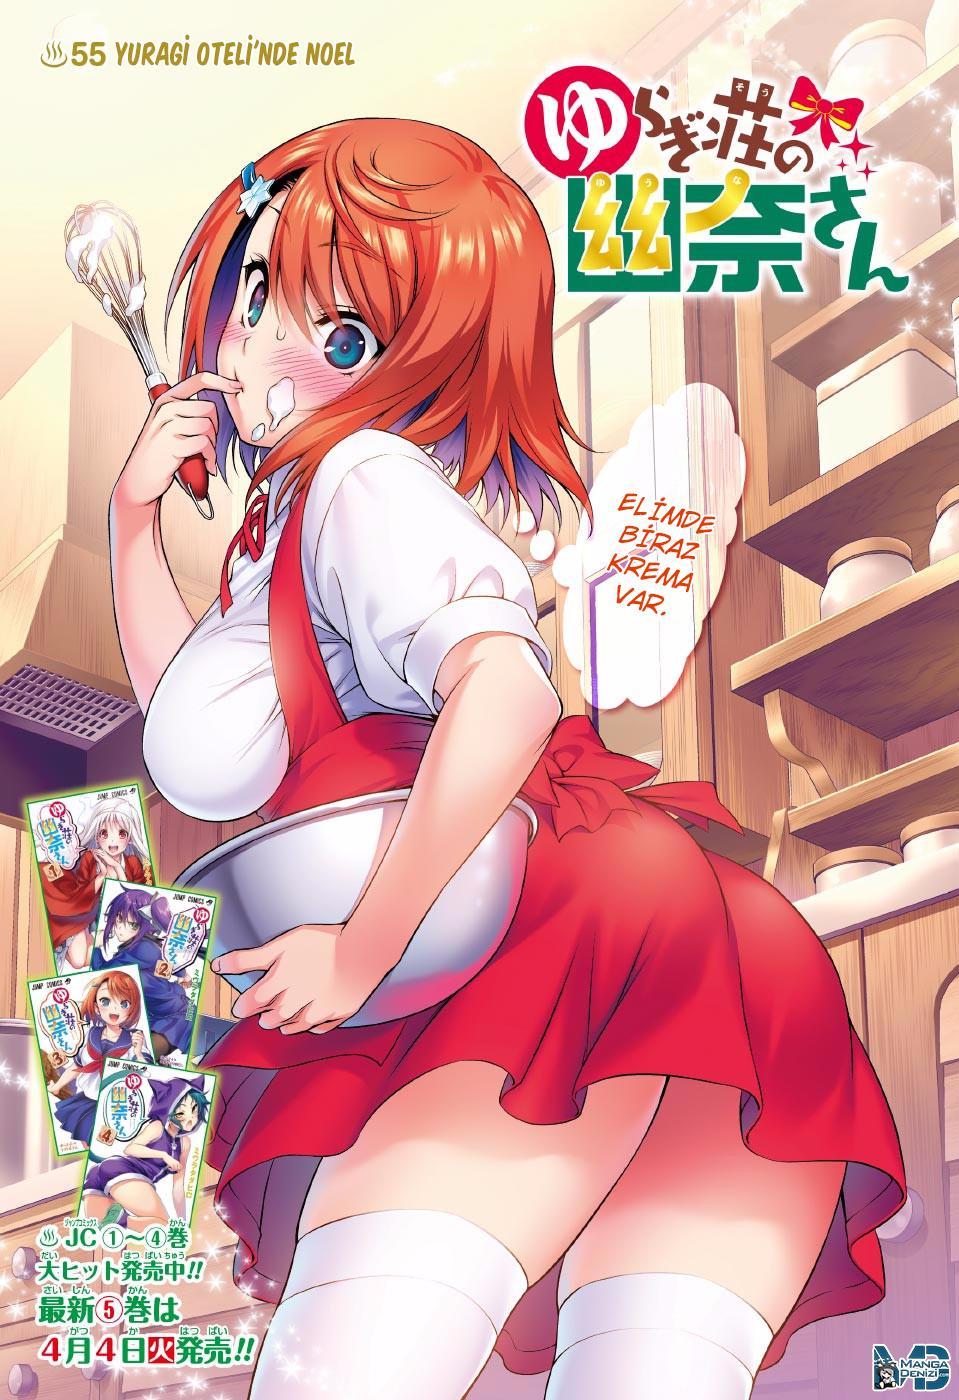 Yuragi-sou no Yuuna-san mangasının 055 bölümünün 2. sayfasını okuyorsunuz.